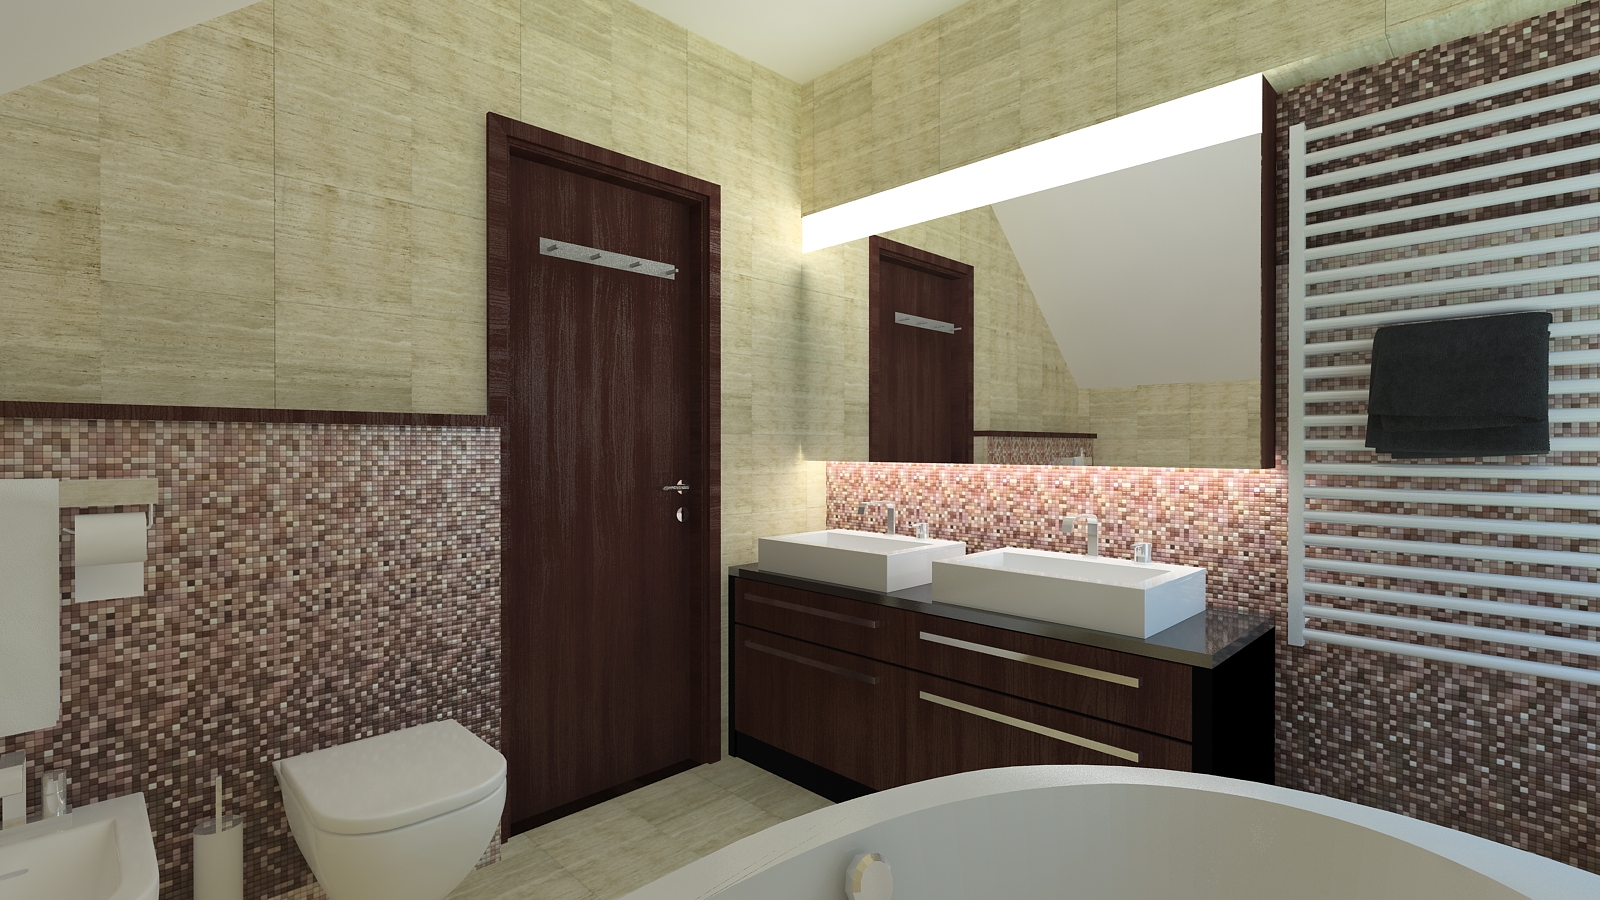 Fürdőszoba látványterv / Bathroom - architectural visualisation